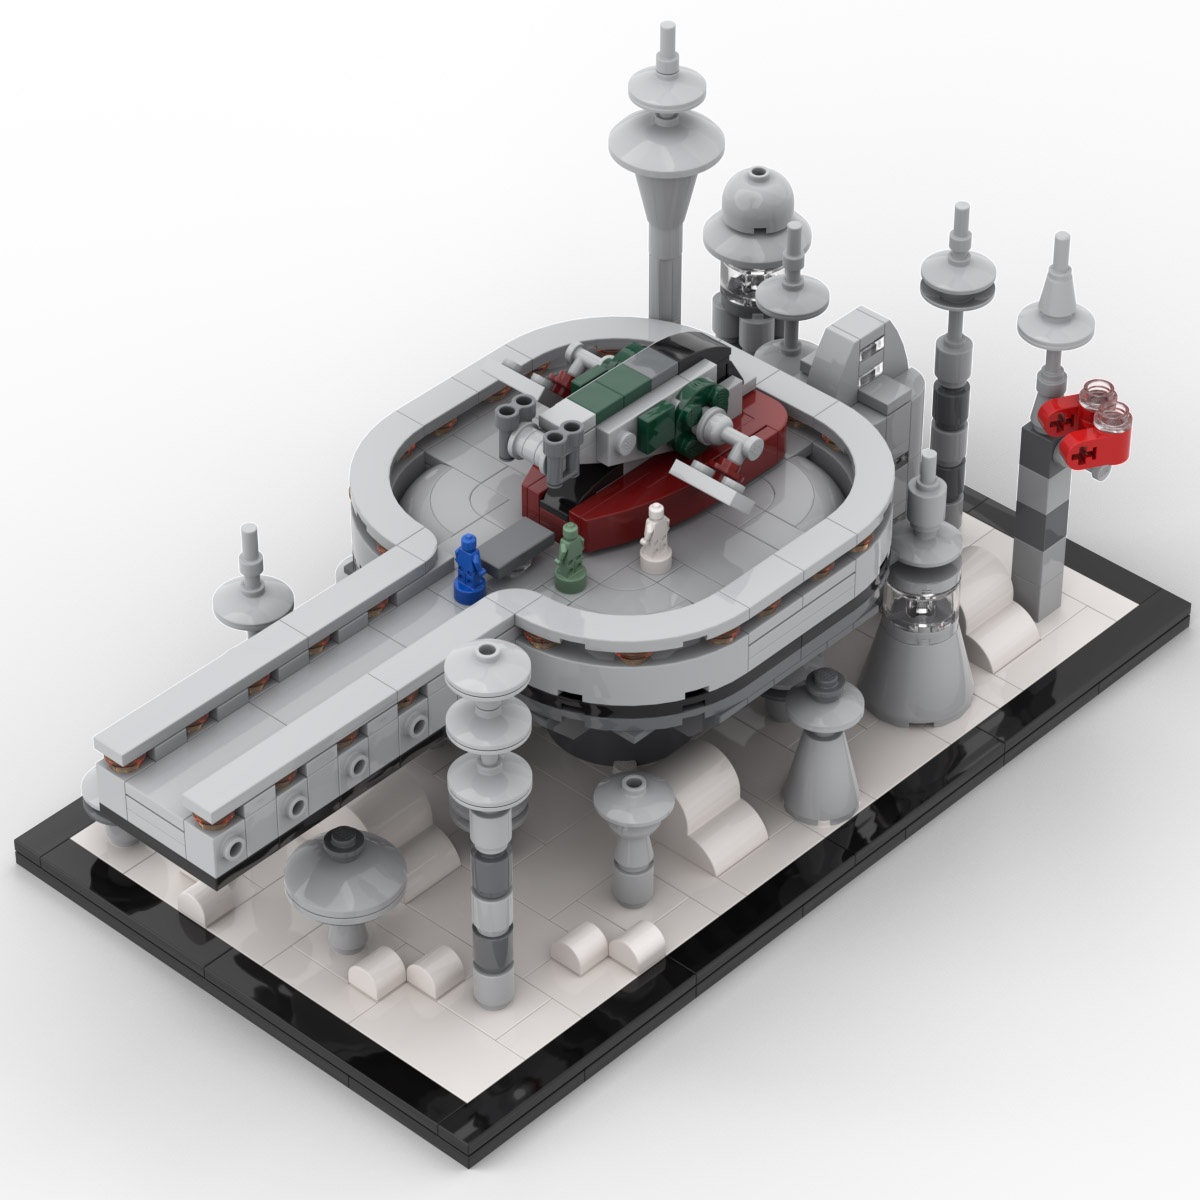 Reporter tvetydigheden flygtninge Lego Star Wars Cloud City Slave 1 Display Set - Custom MOC Instructions